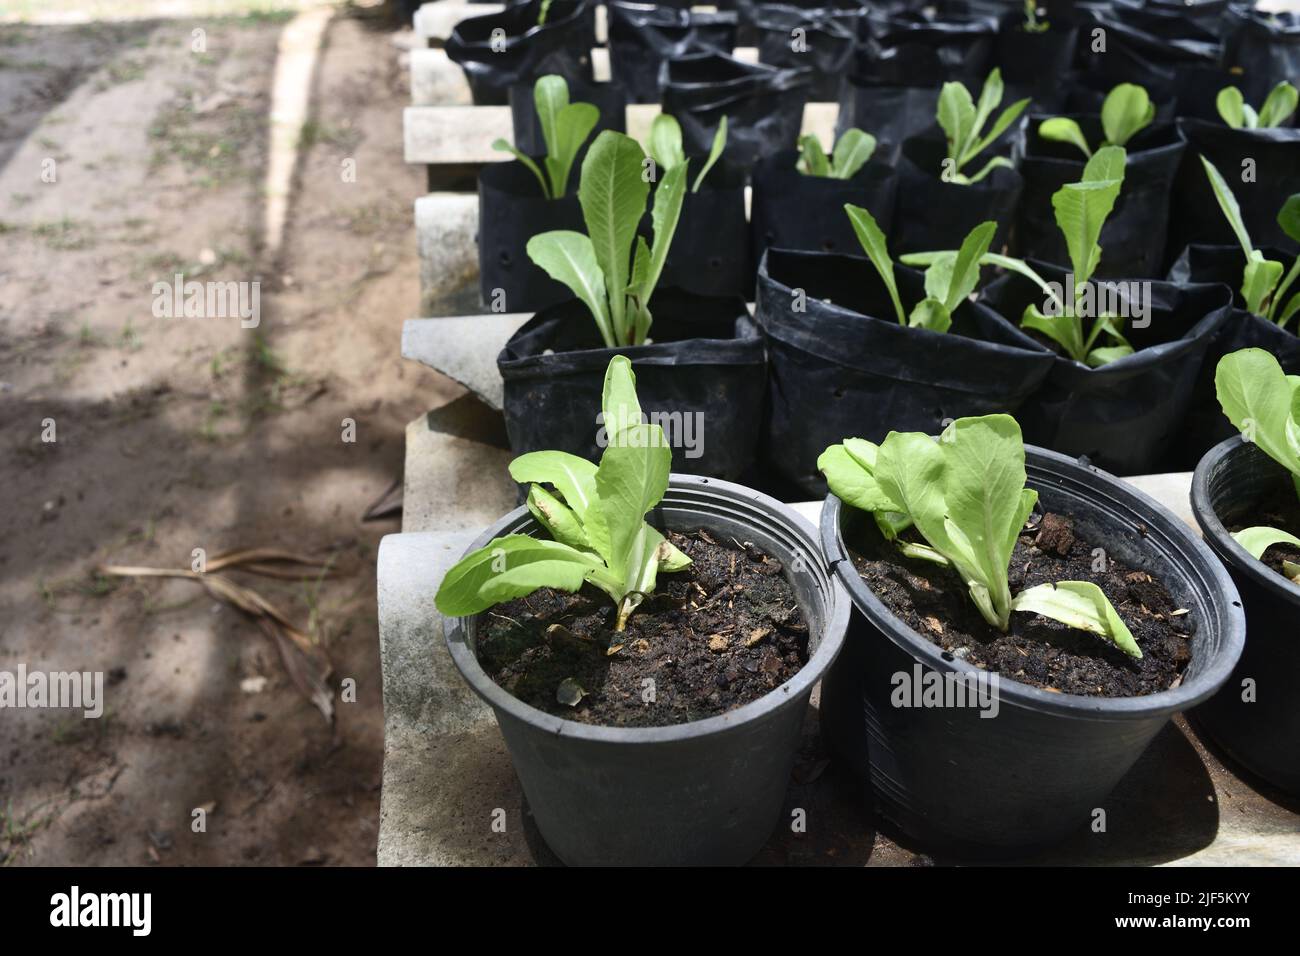 Grupo de Spinacia oleracea o planta de espinacas en la tierra en la olla del blaback, Vegetal verde en el jardín orgánico Foto de stock